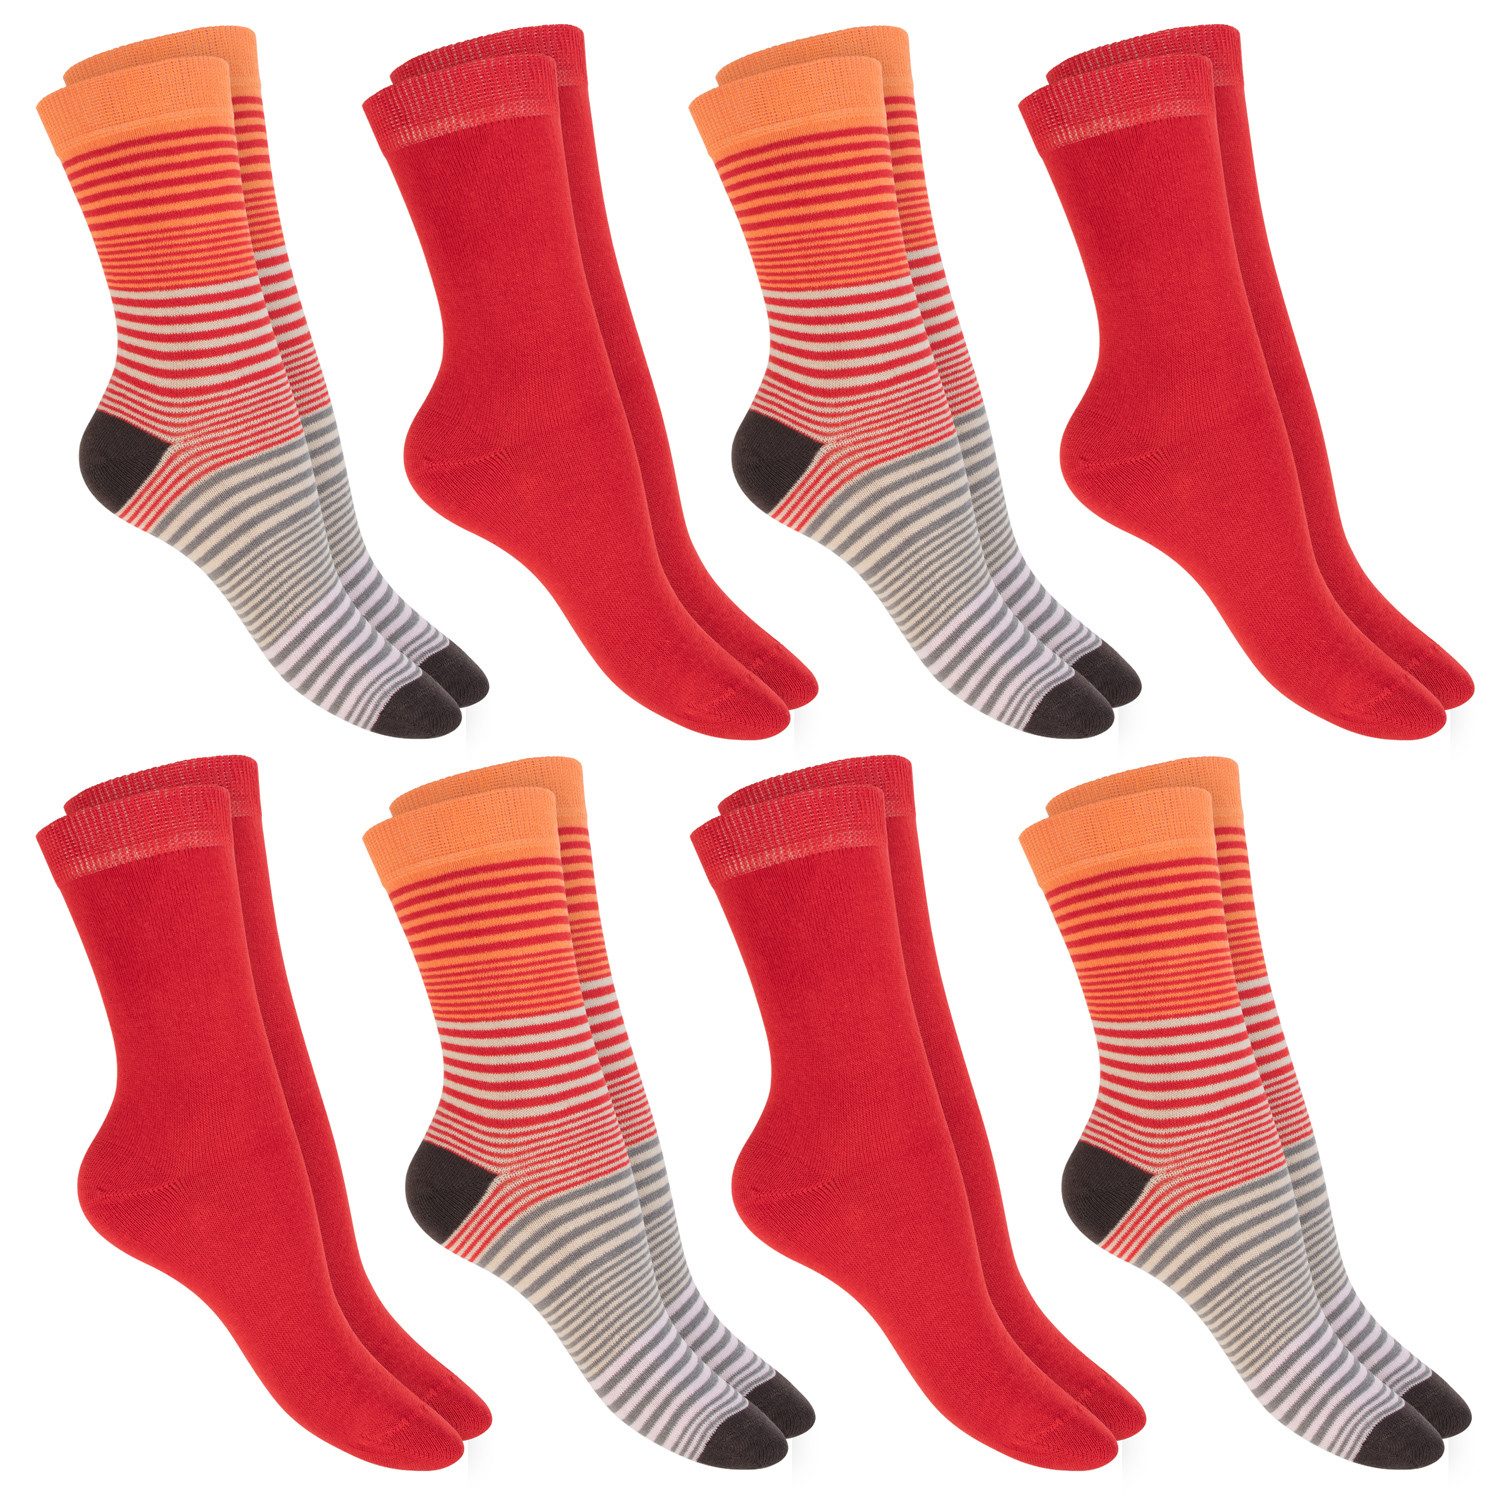 celodoro Basicsocken Damen Socken (8 Paar) mit Ringel-/Blockstreifen & Komfortbund